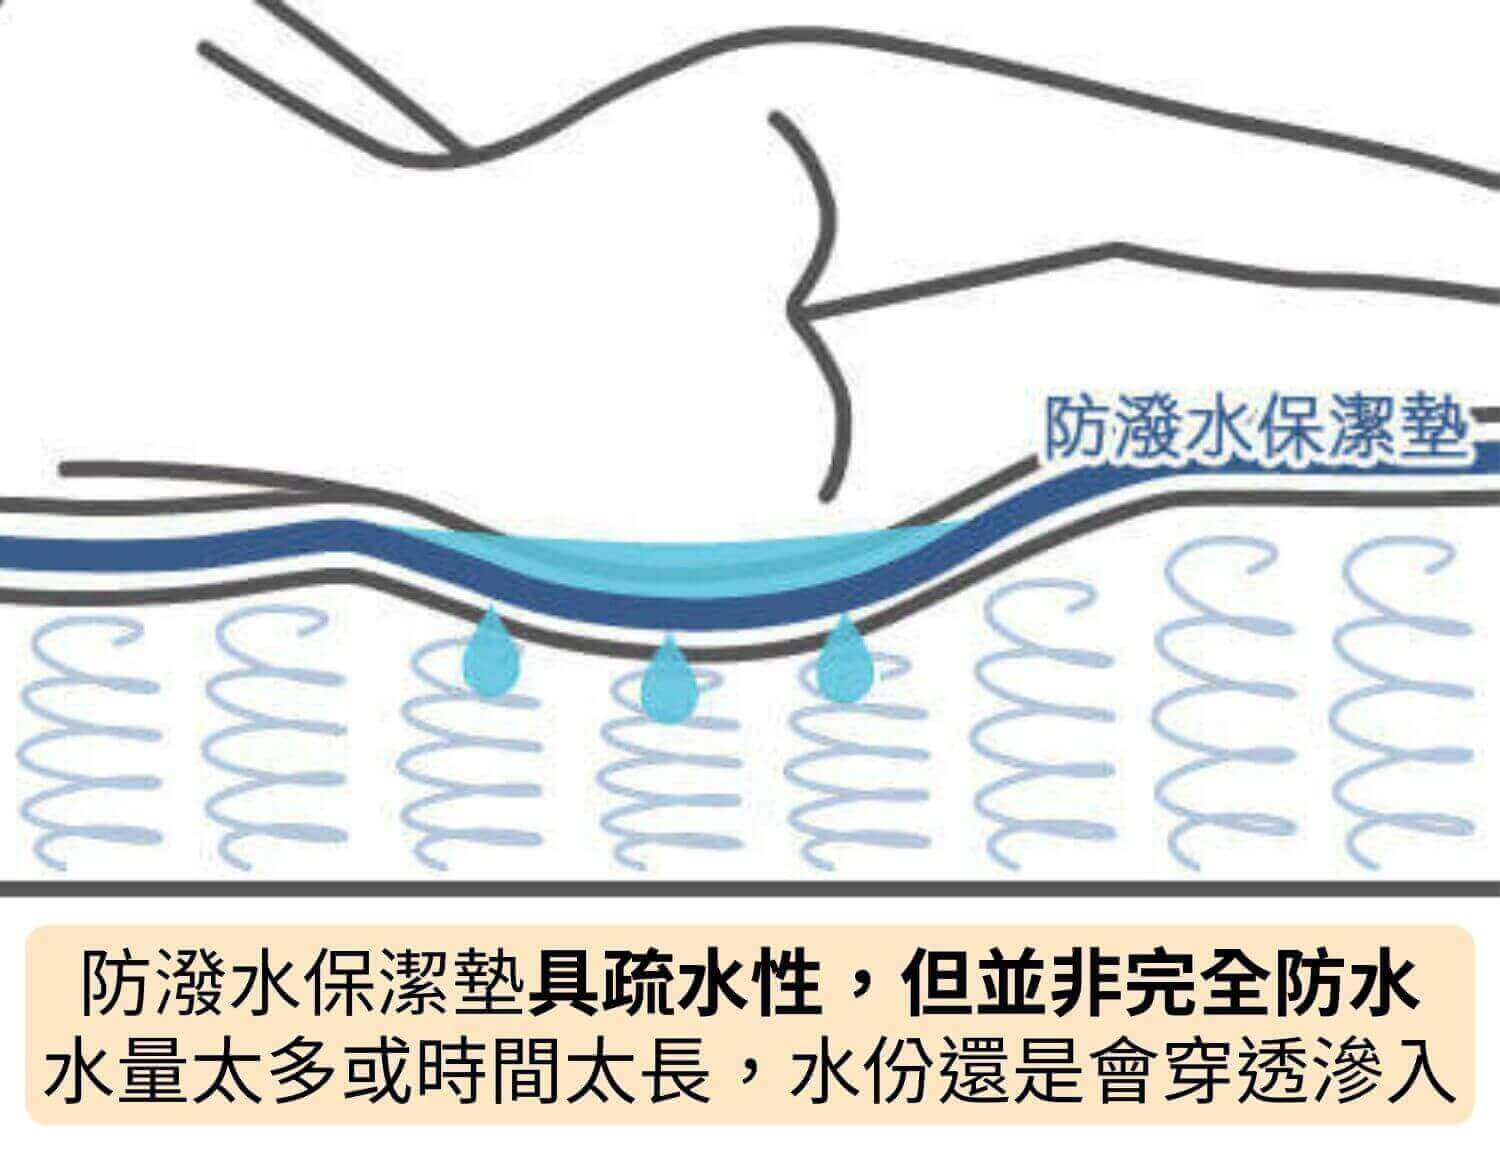 防潑水保潔墊具疏水性，但並非完全防水，水量太多或時間太長，水份還是會穿透滲入